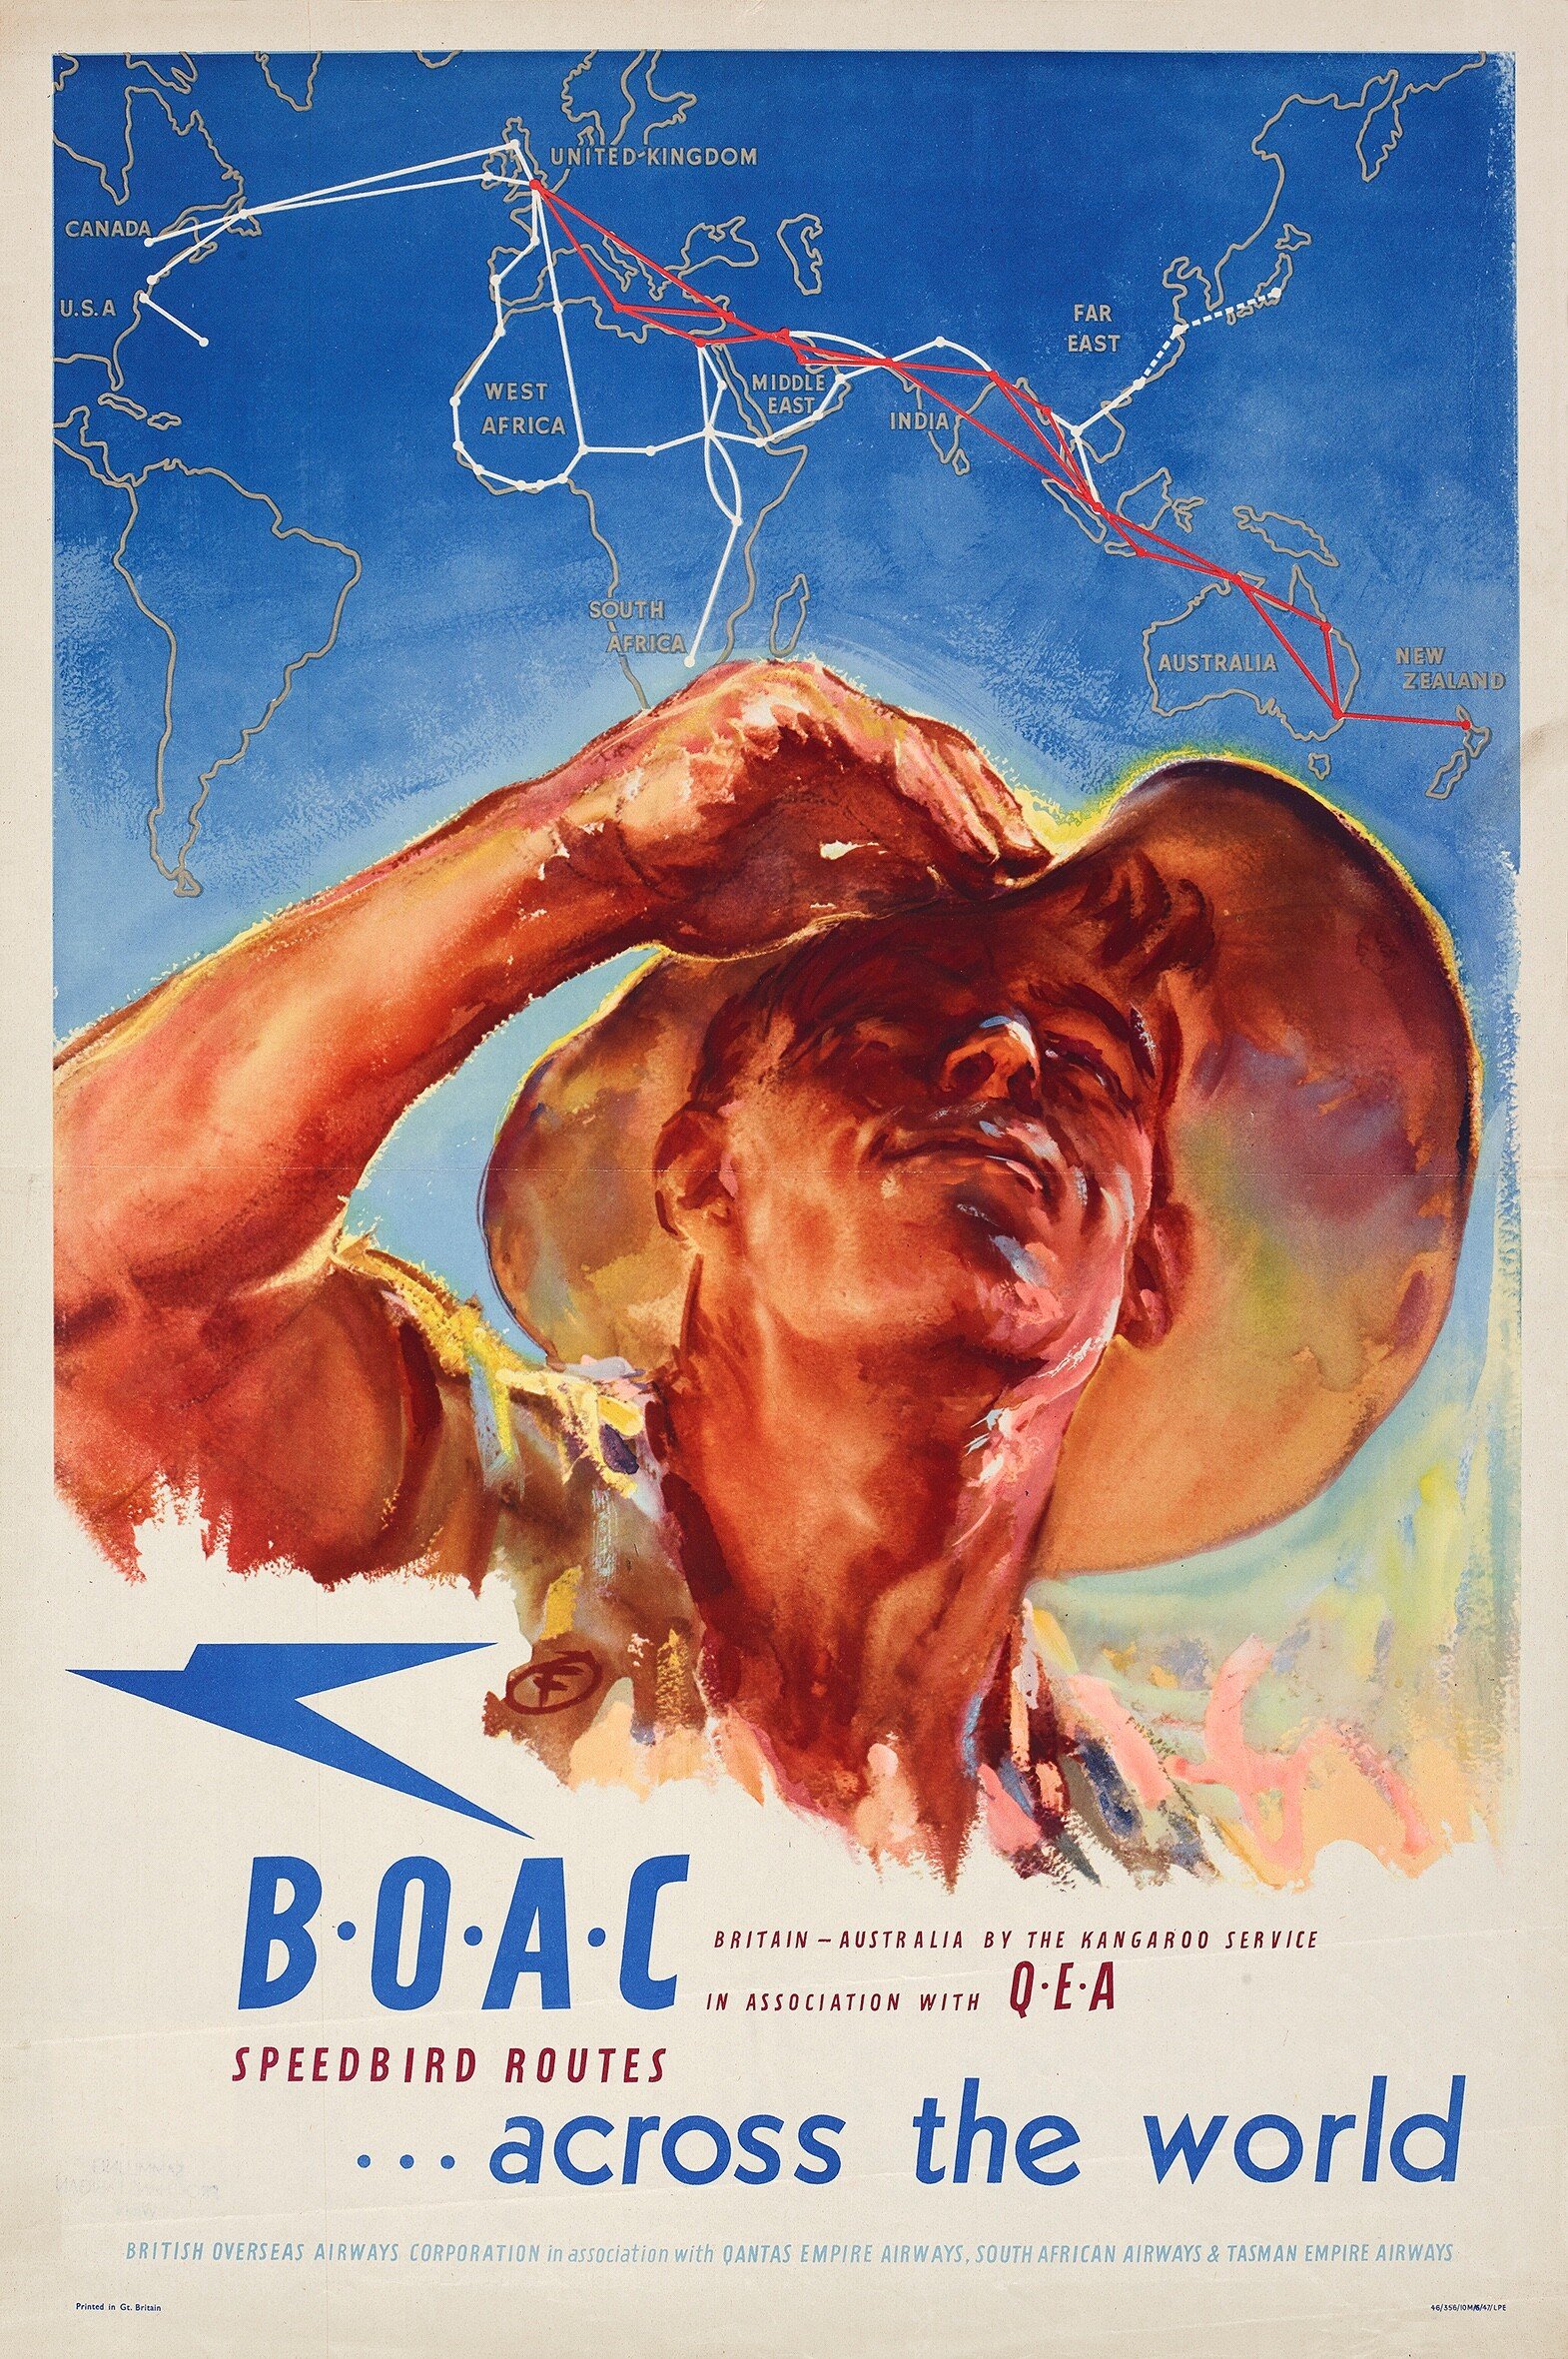 BOAC Speedbird Routes